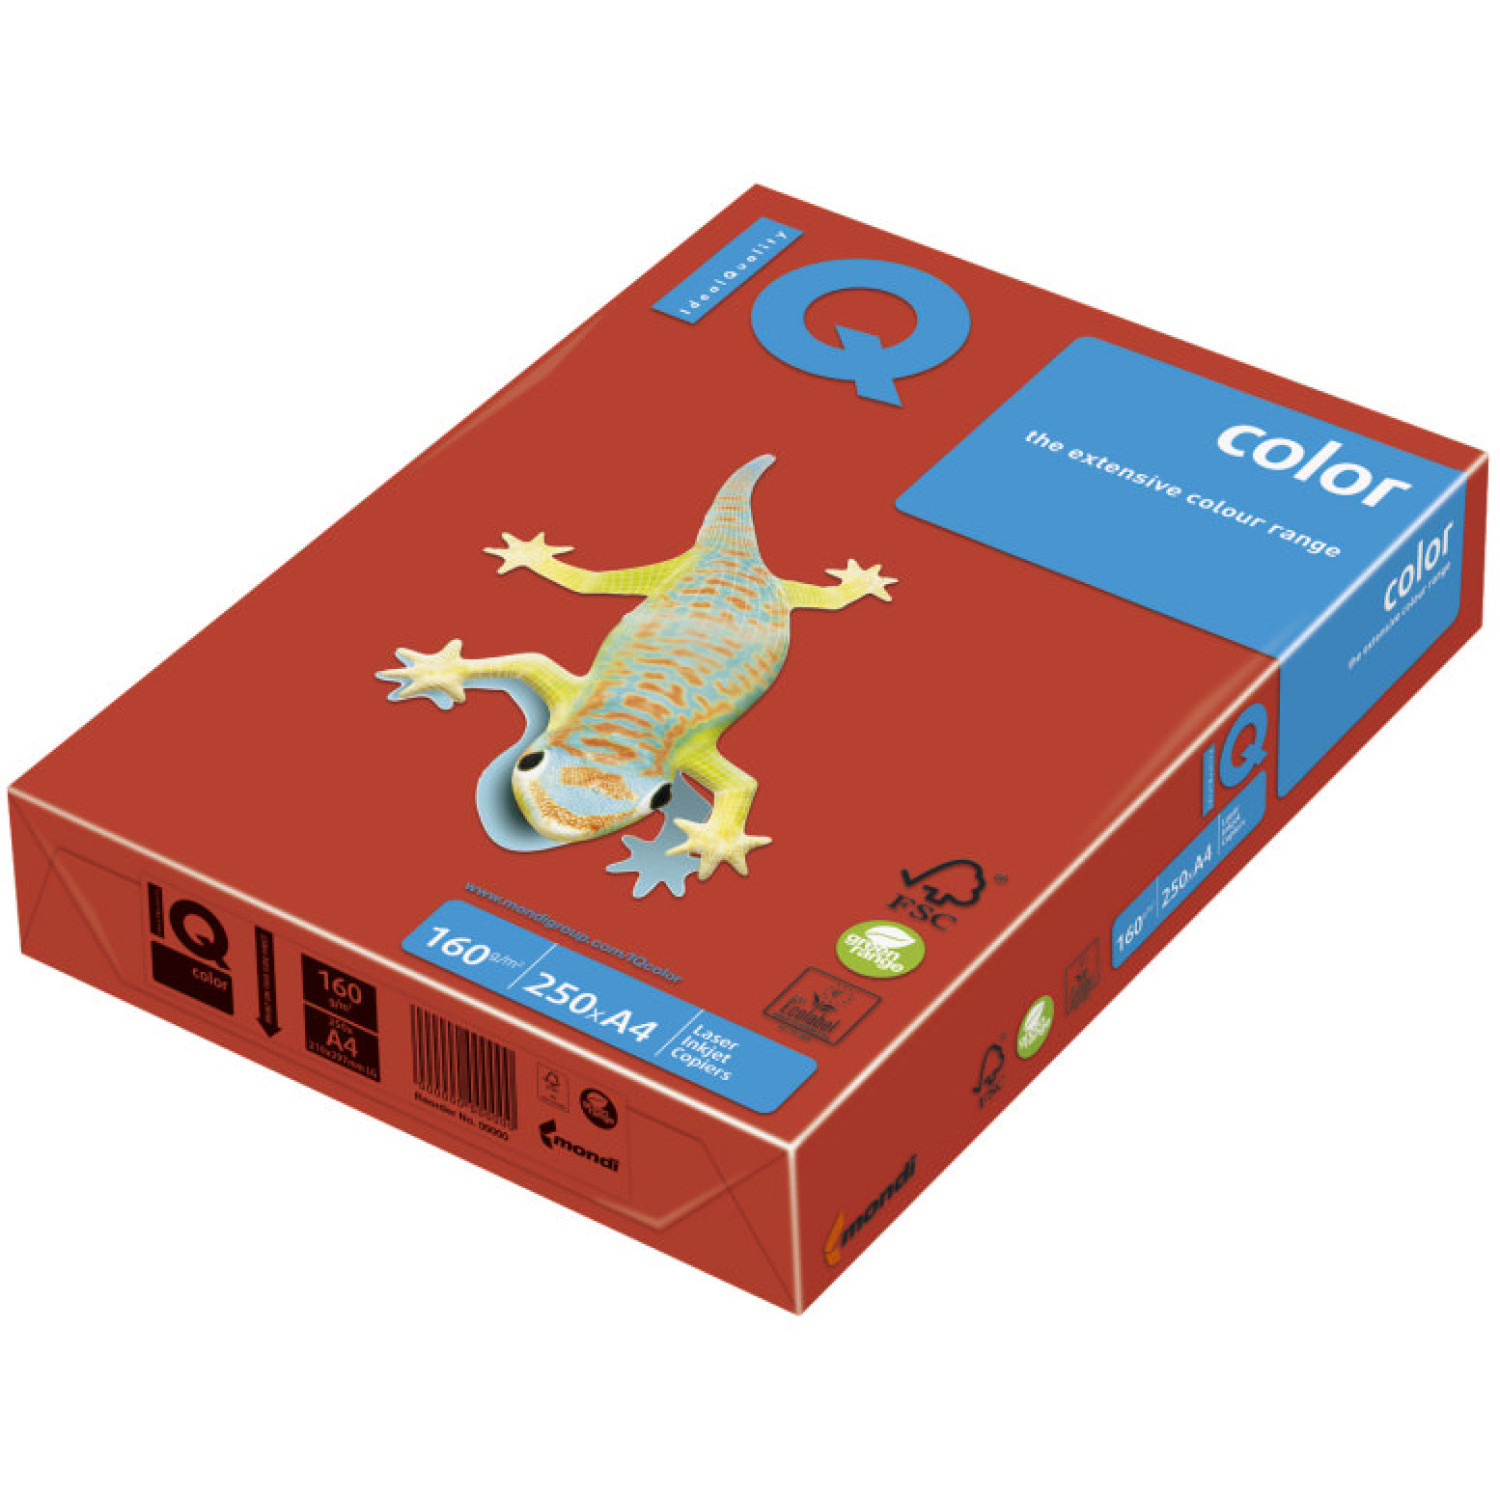 Копирен картон IQ CO44, 160 гр., корал